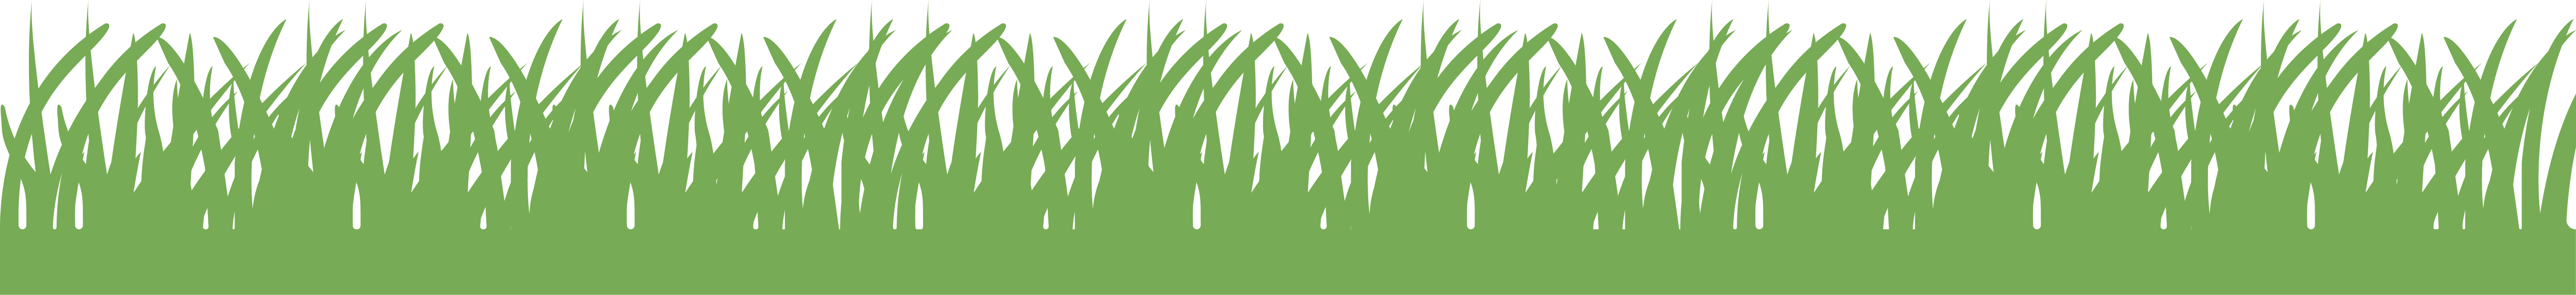 Wide-Grass-Vector-1